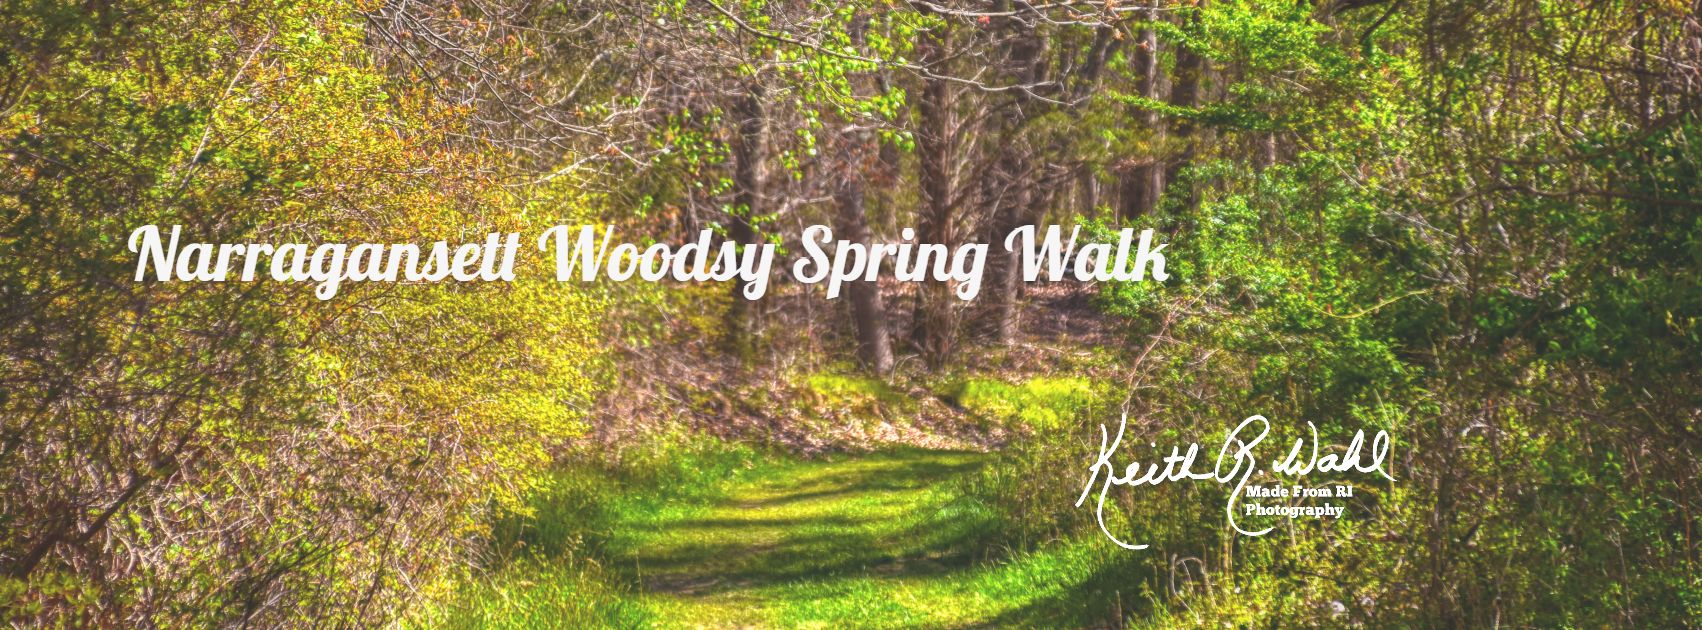 Narragansett Woodsy Spring Walk